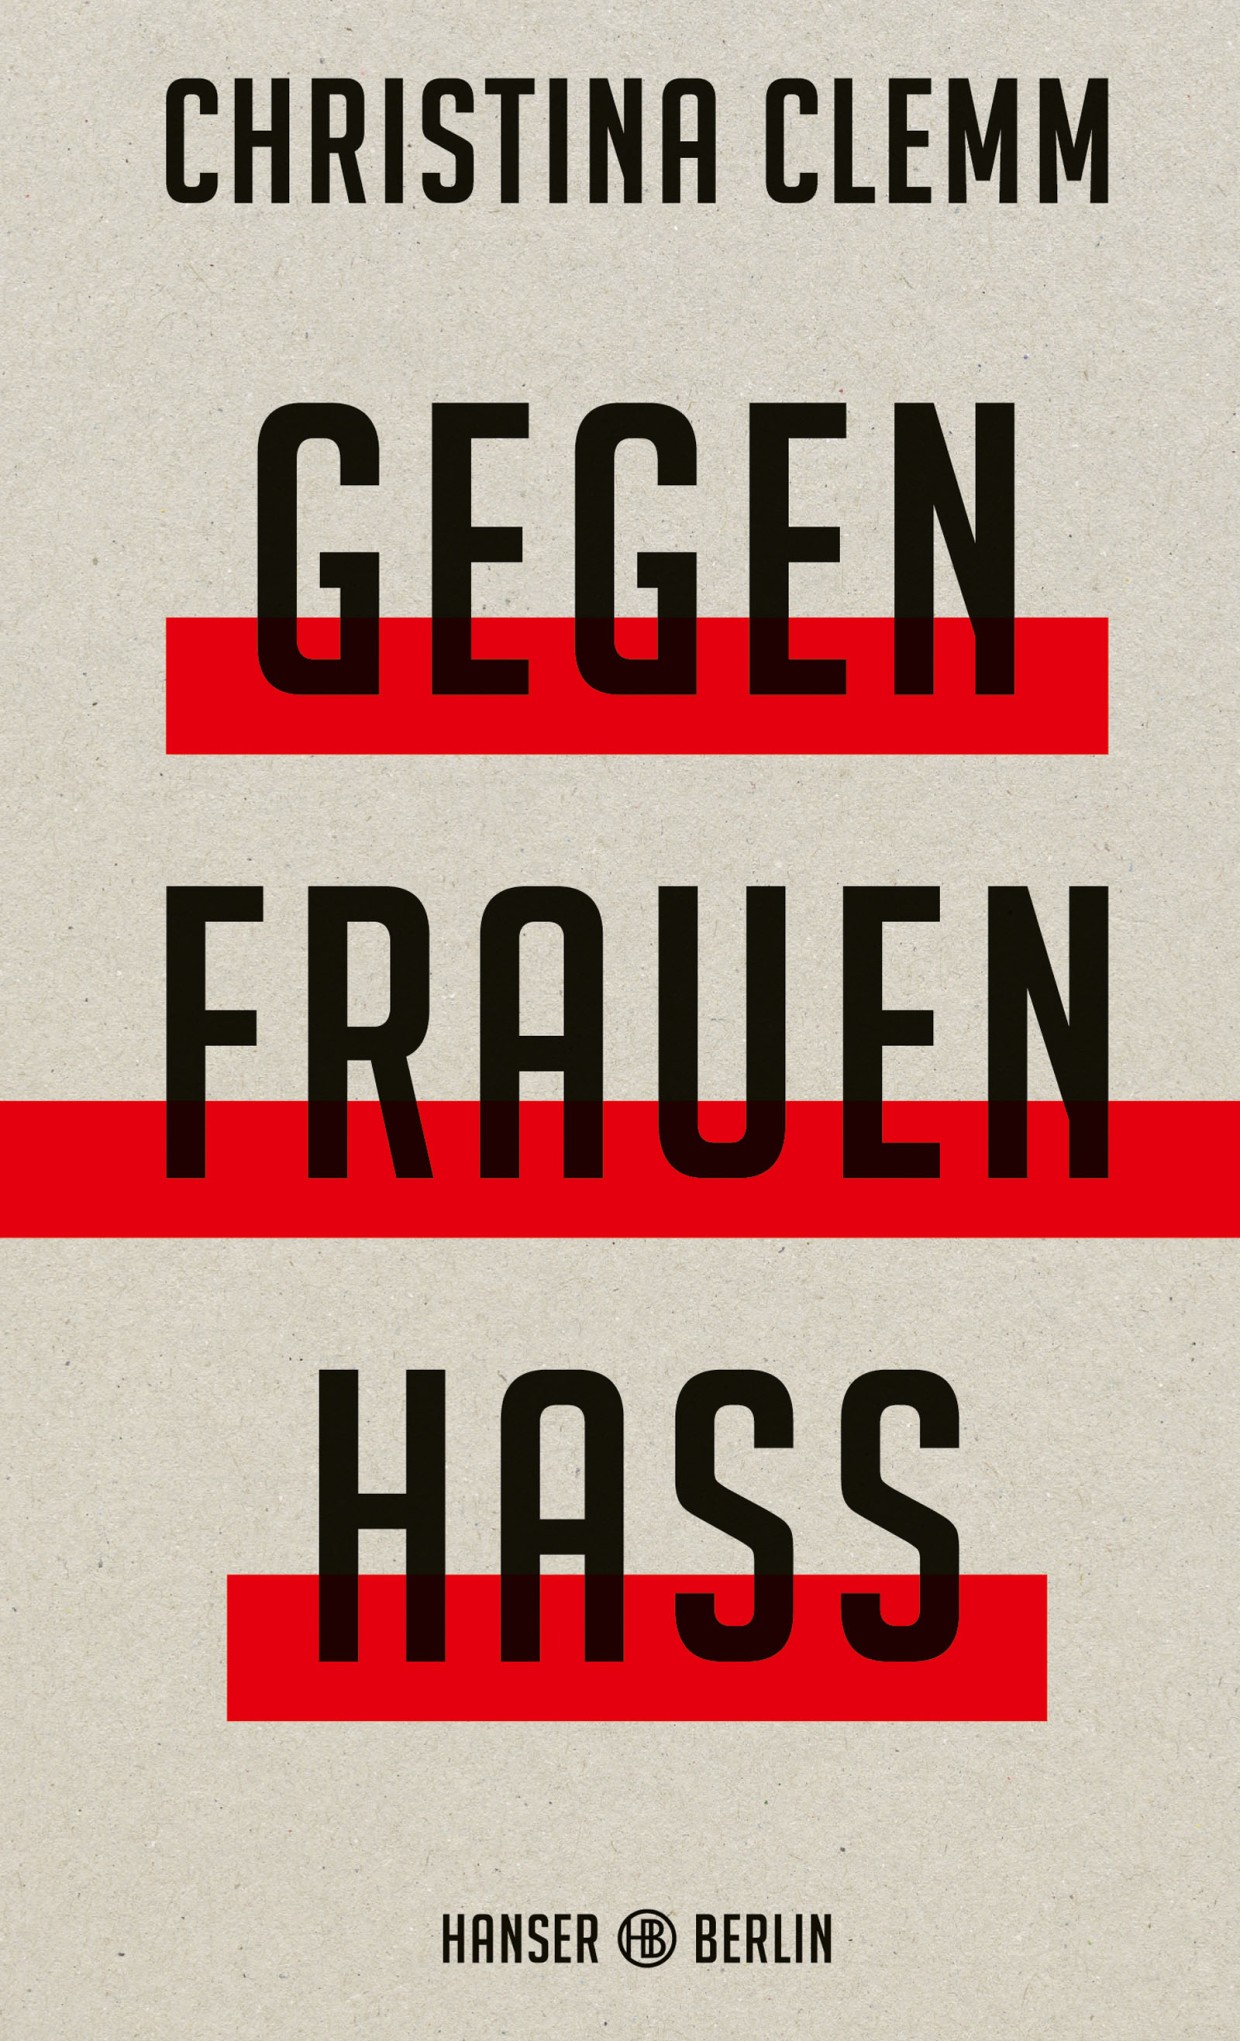 Cover des Buchtitels "Gegen Frauenhass"